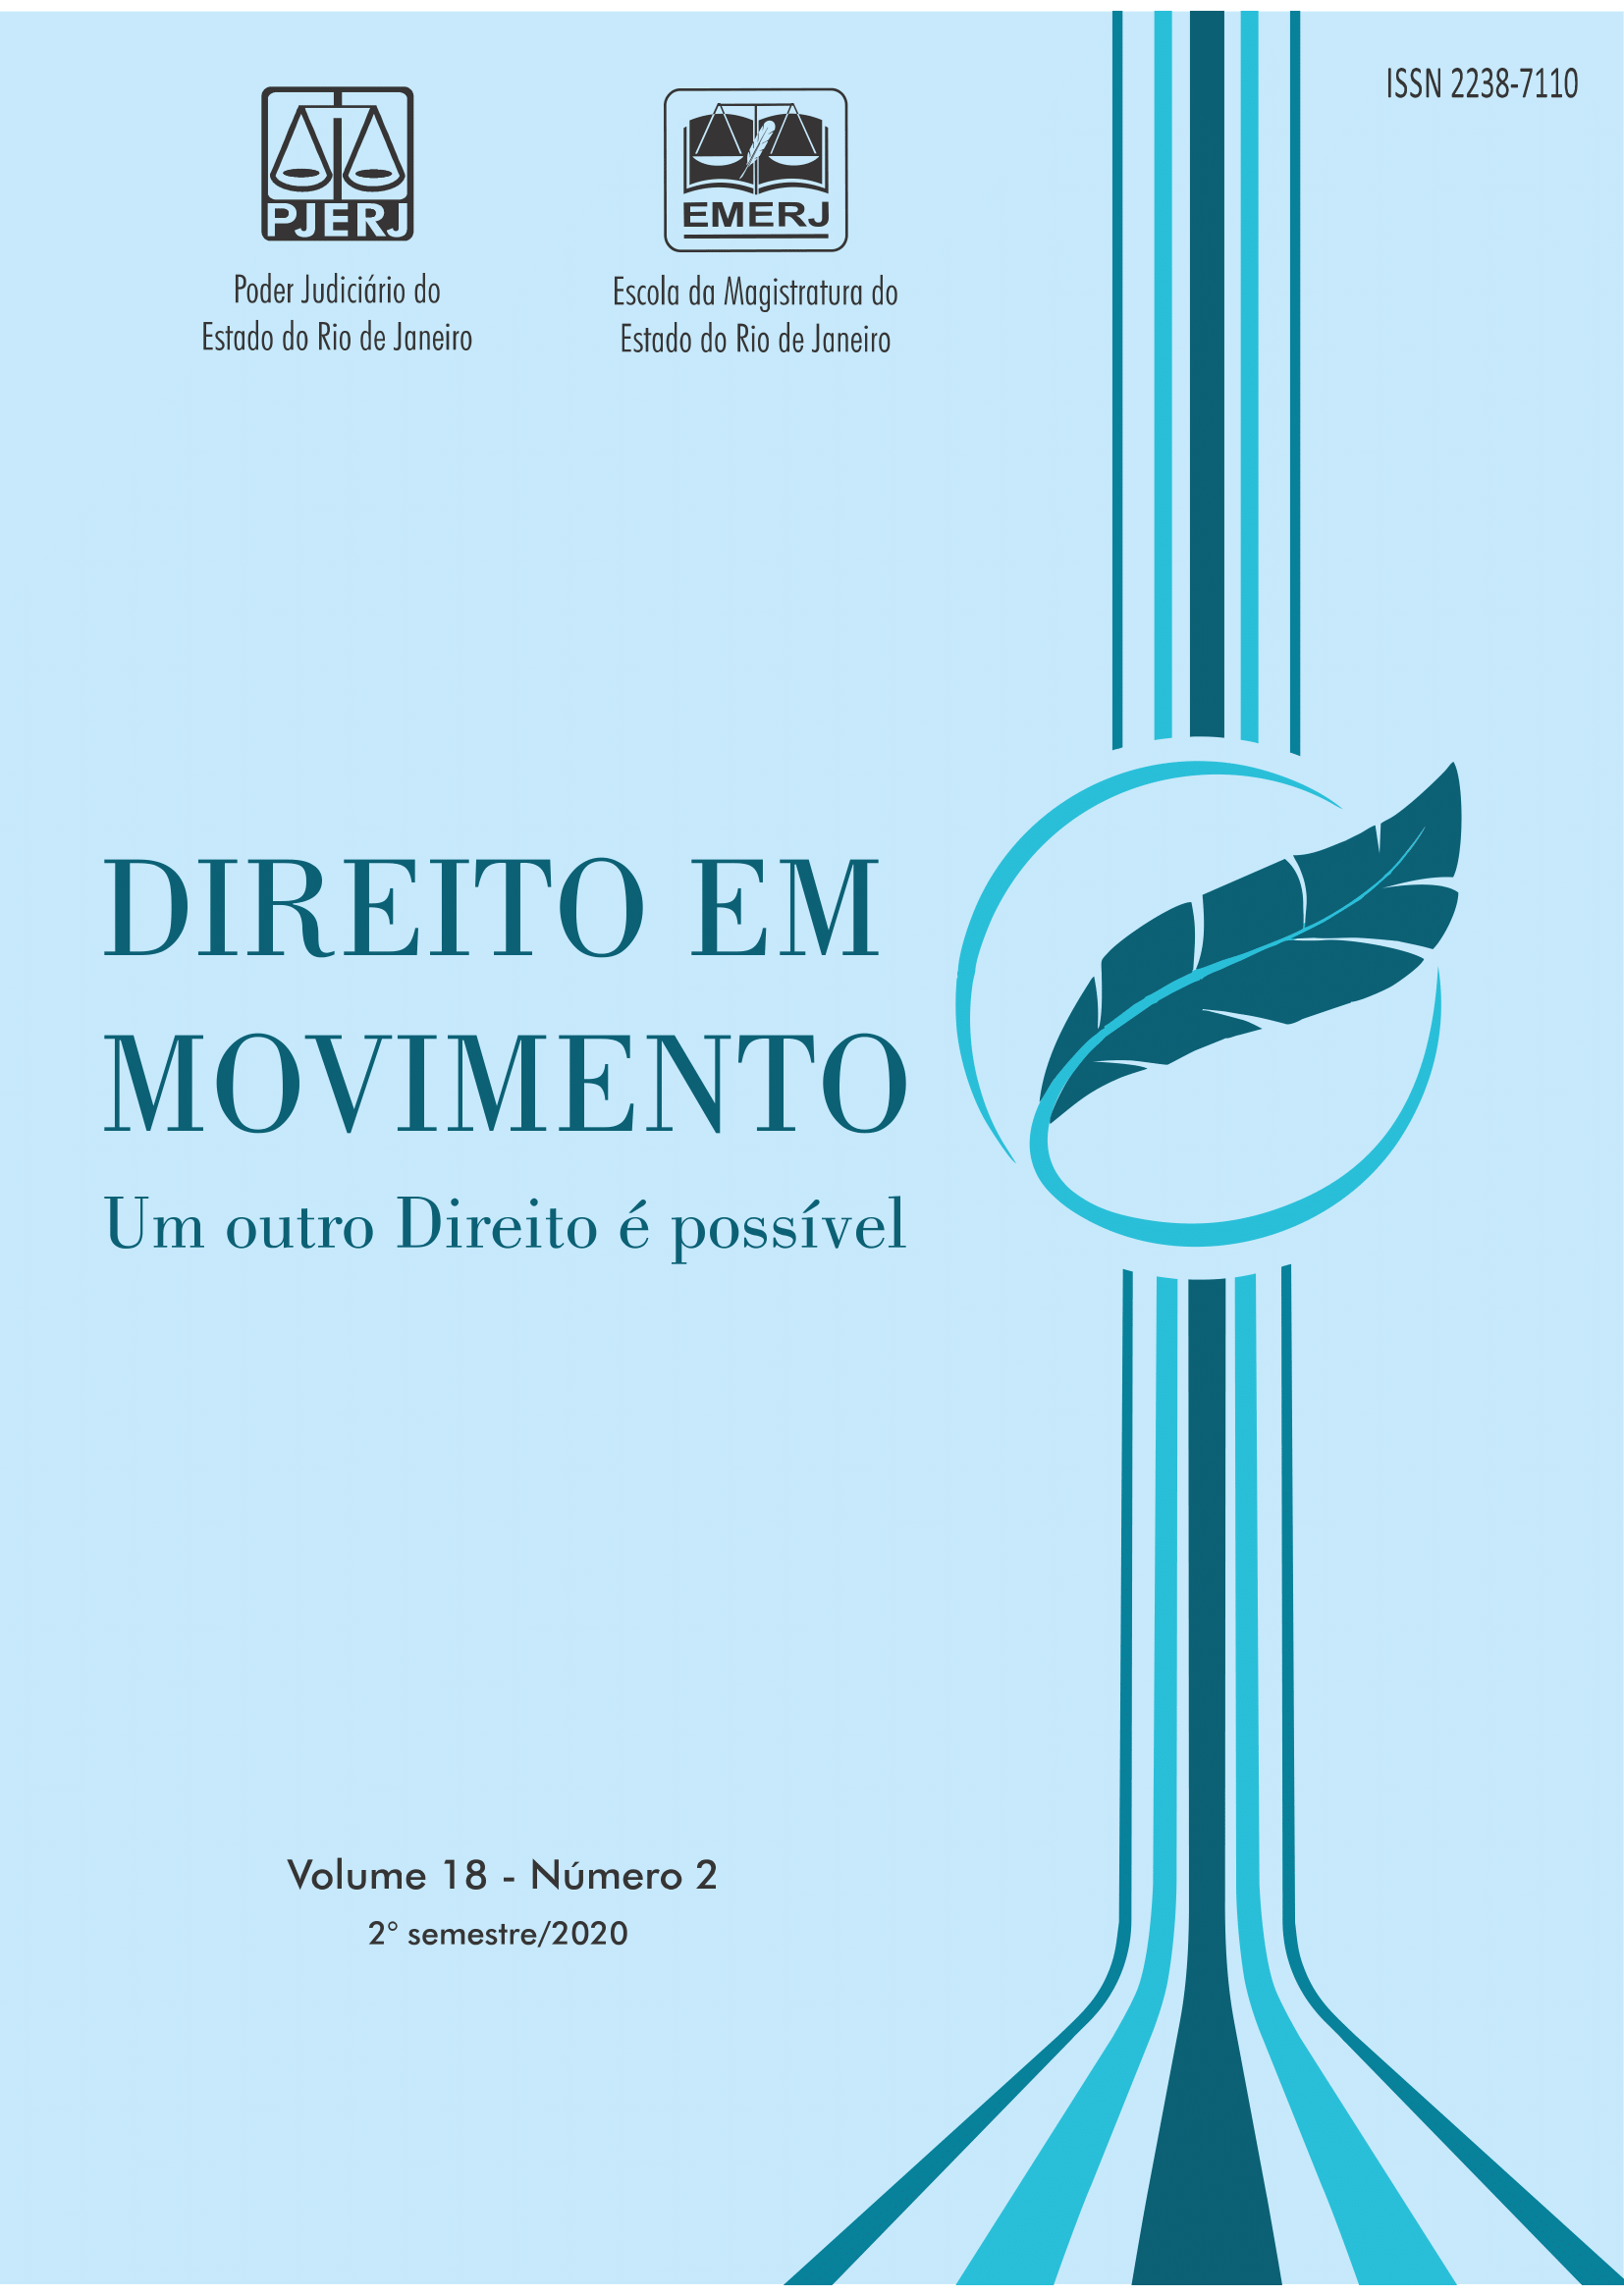 					Afficher Vol. 18 No 2 (2020): Revista Direito em Movimento
				